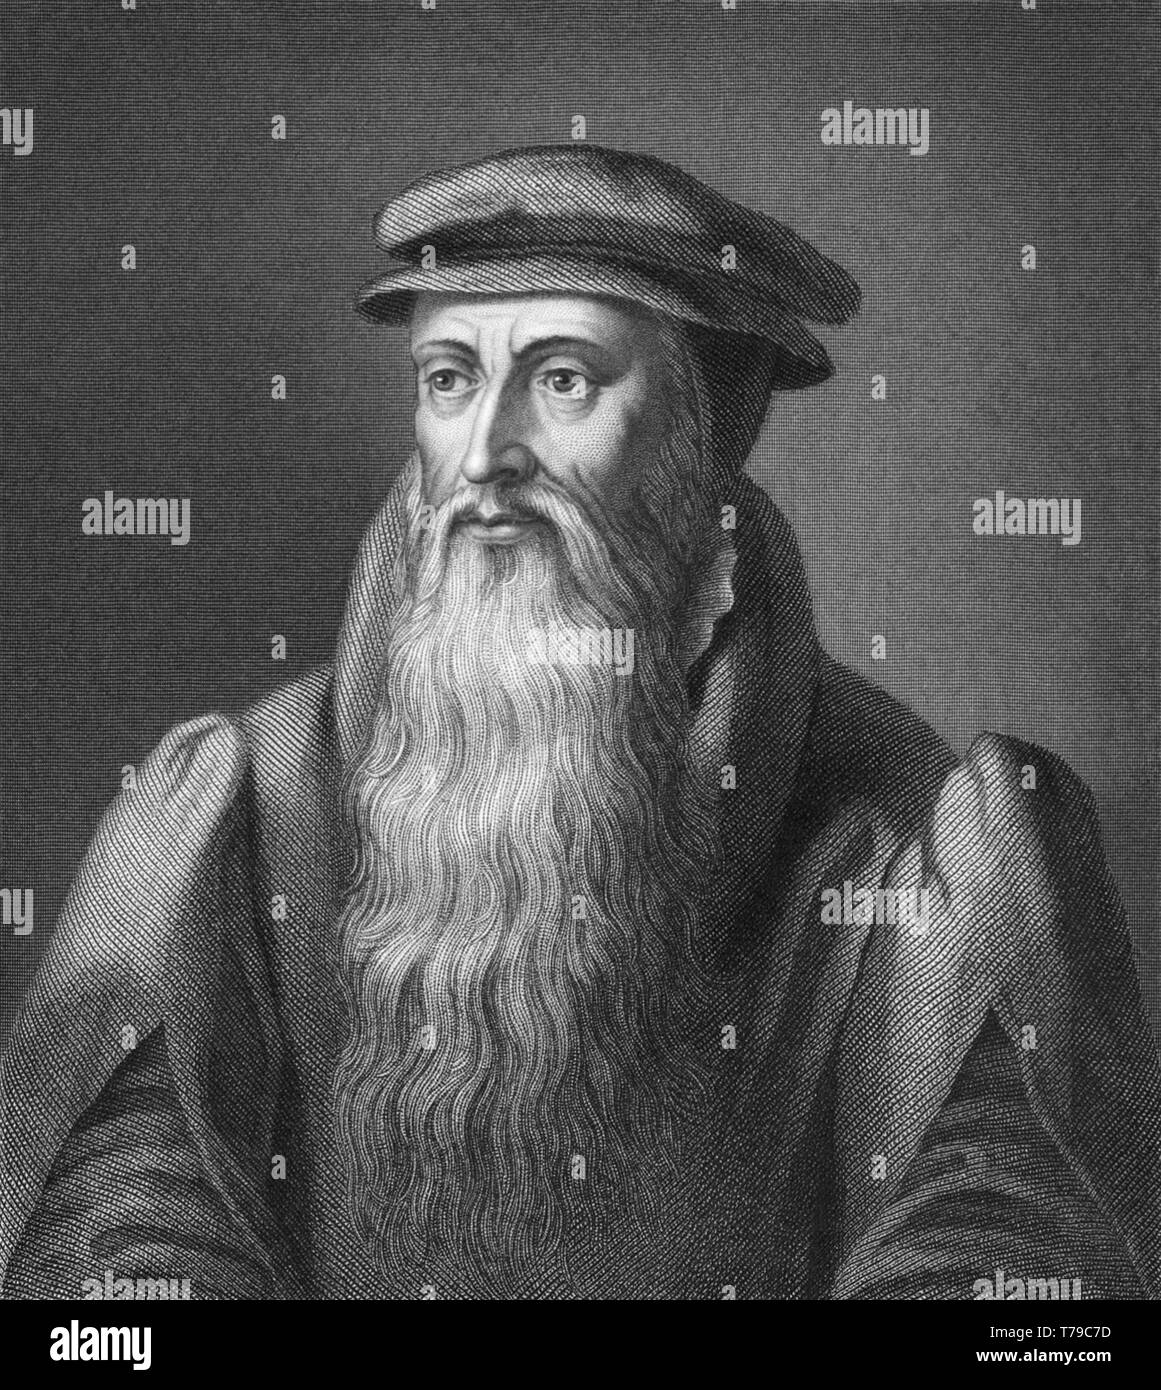 John Knox (c1513-1572) fue un ministro escocés, teólogo y escritor, quien fue un líder de la Reforma en Escocia y fue el fundador de la Iglesia Presbiteriana de Escocia. Foto de stock